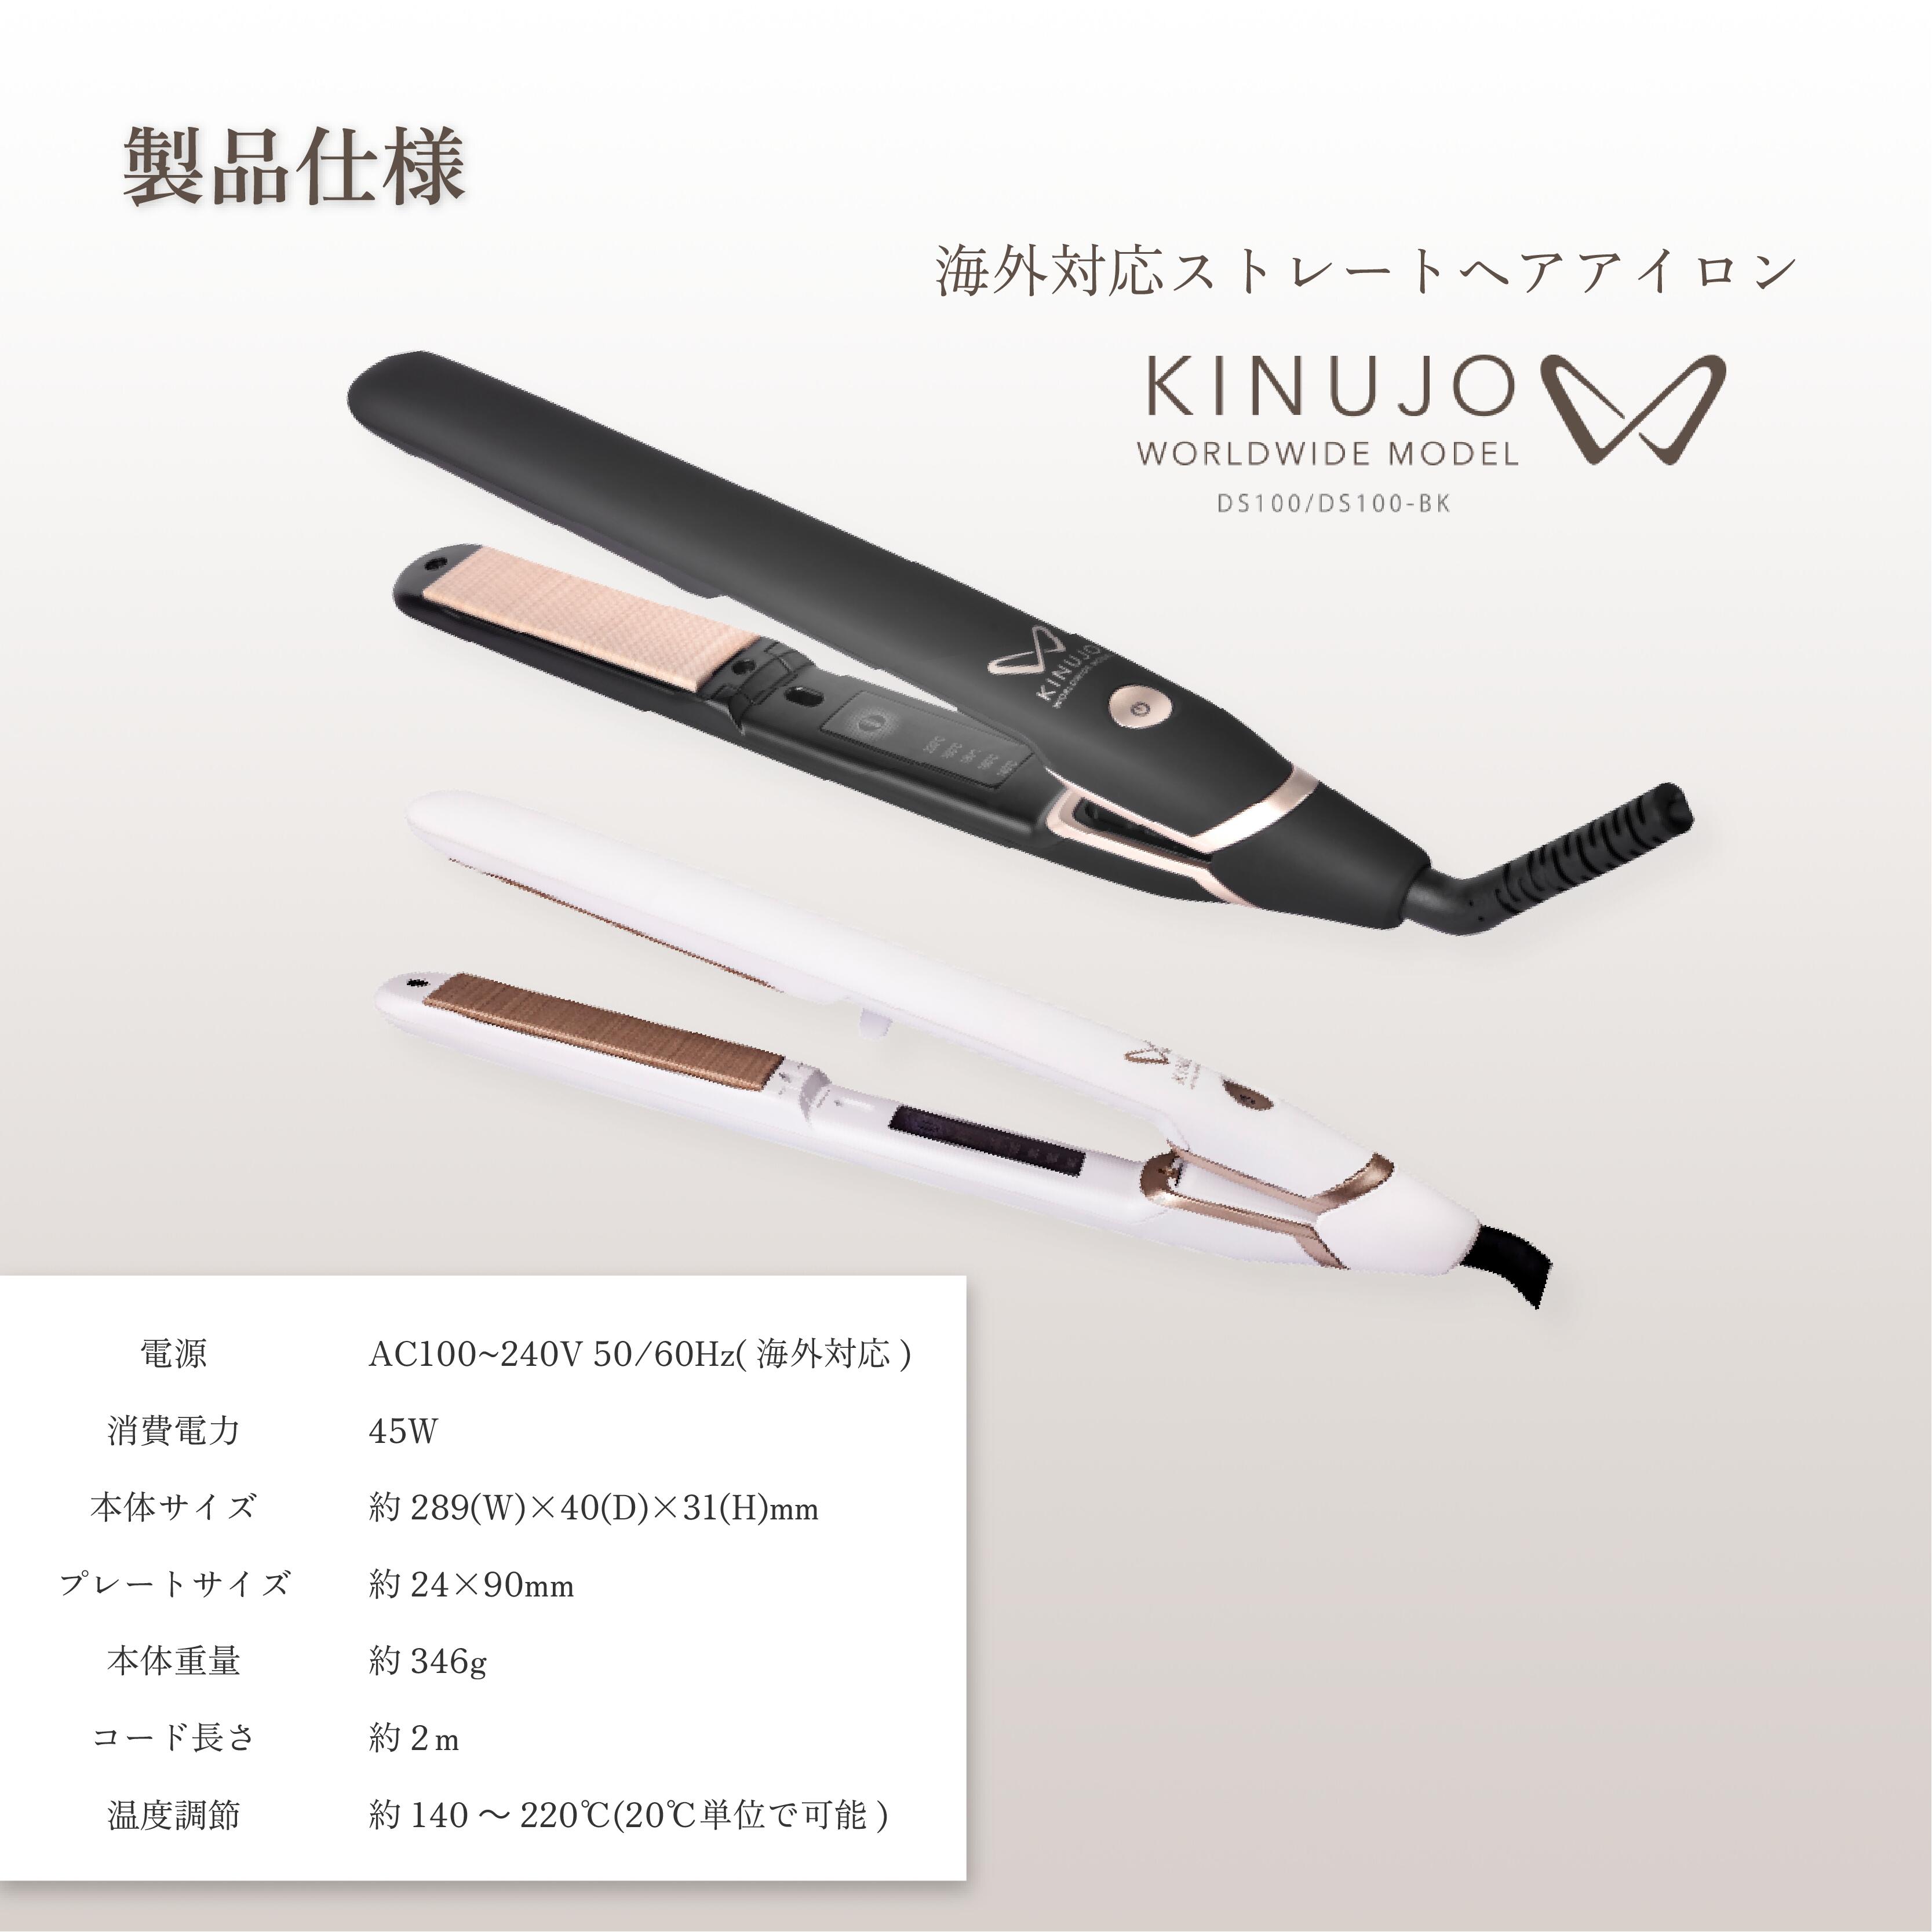 公式】 KINUJO W-worldwide model- キヌージョワールド 絹女 海外 ヘア